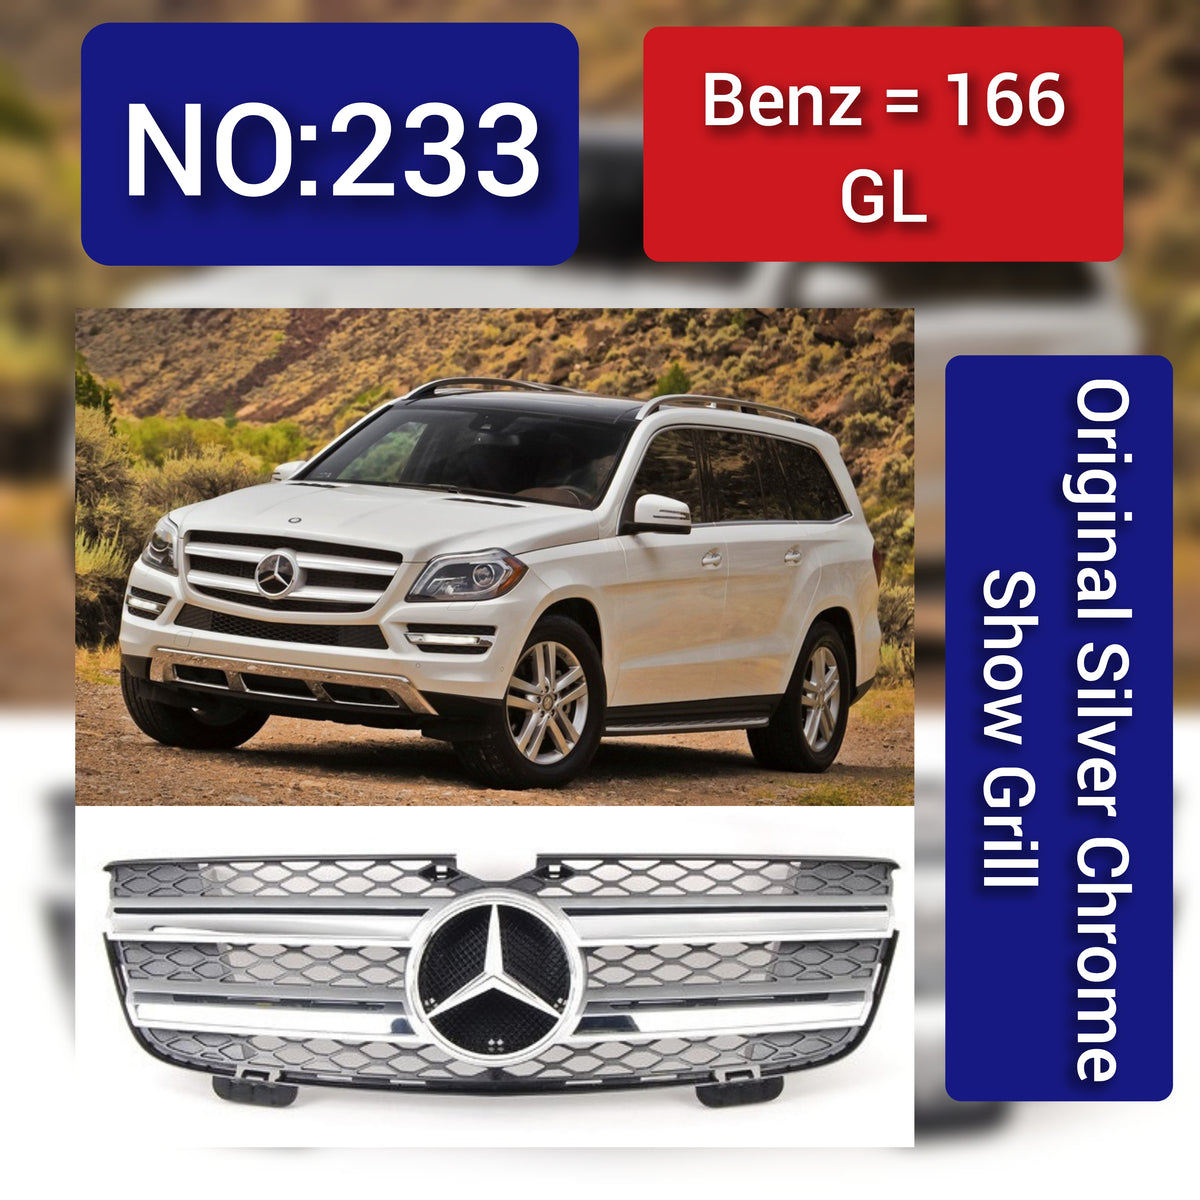 Benz = 166 GL  Original Silver Chrome Show Grill  Tag 233